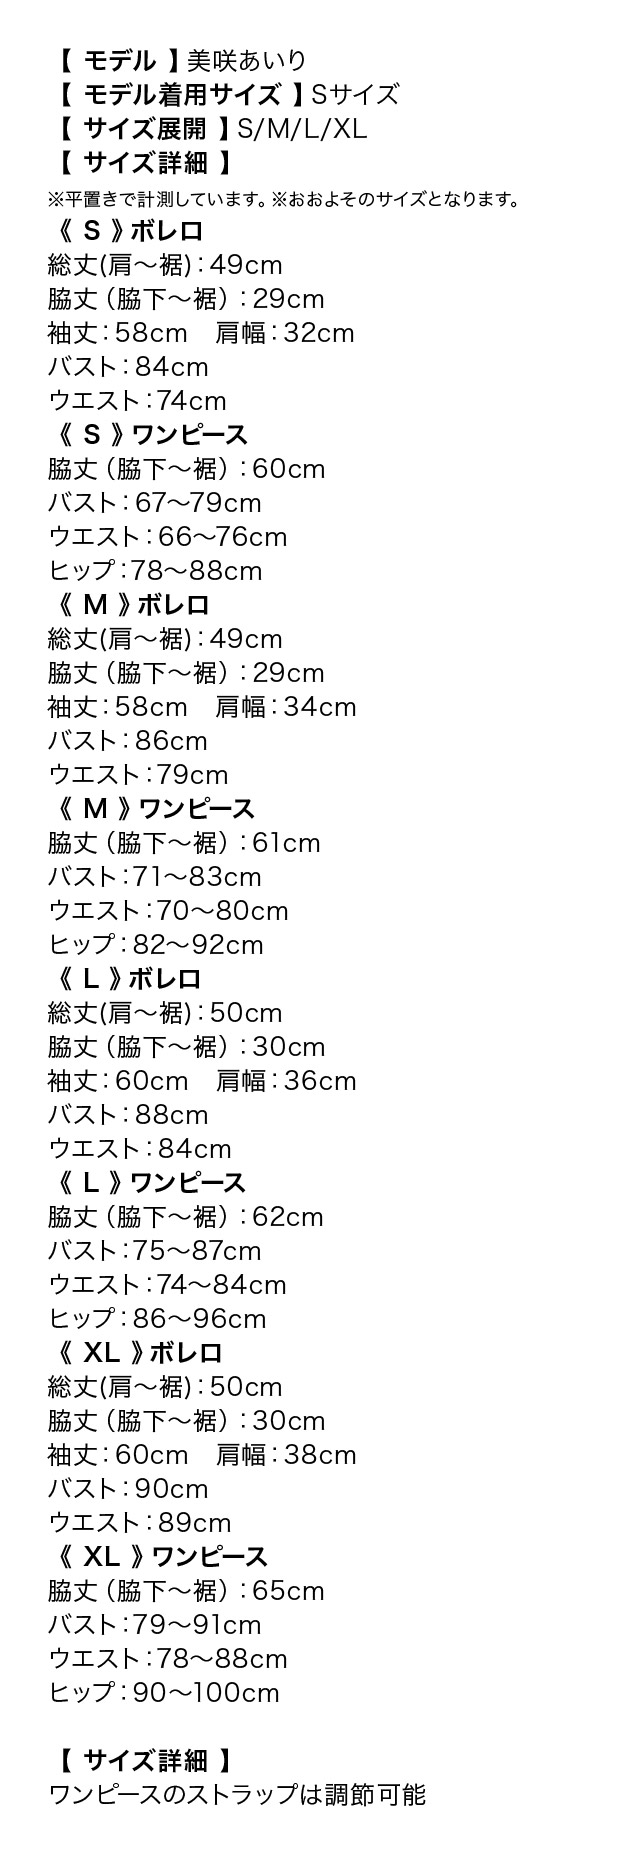 キャミワンピースパールビジュージャケットセットアップスーツのサイズ表